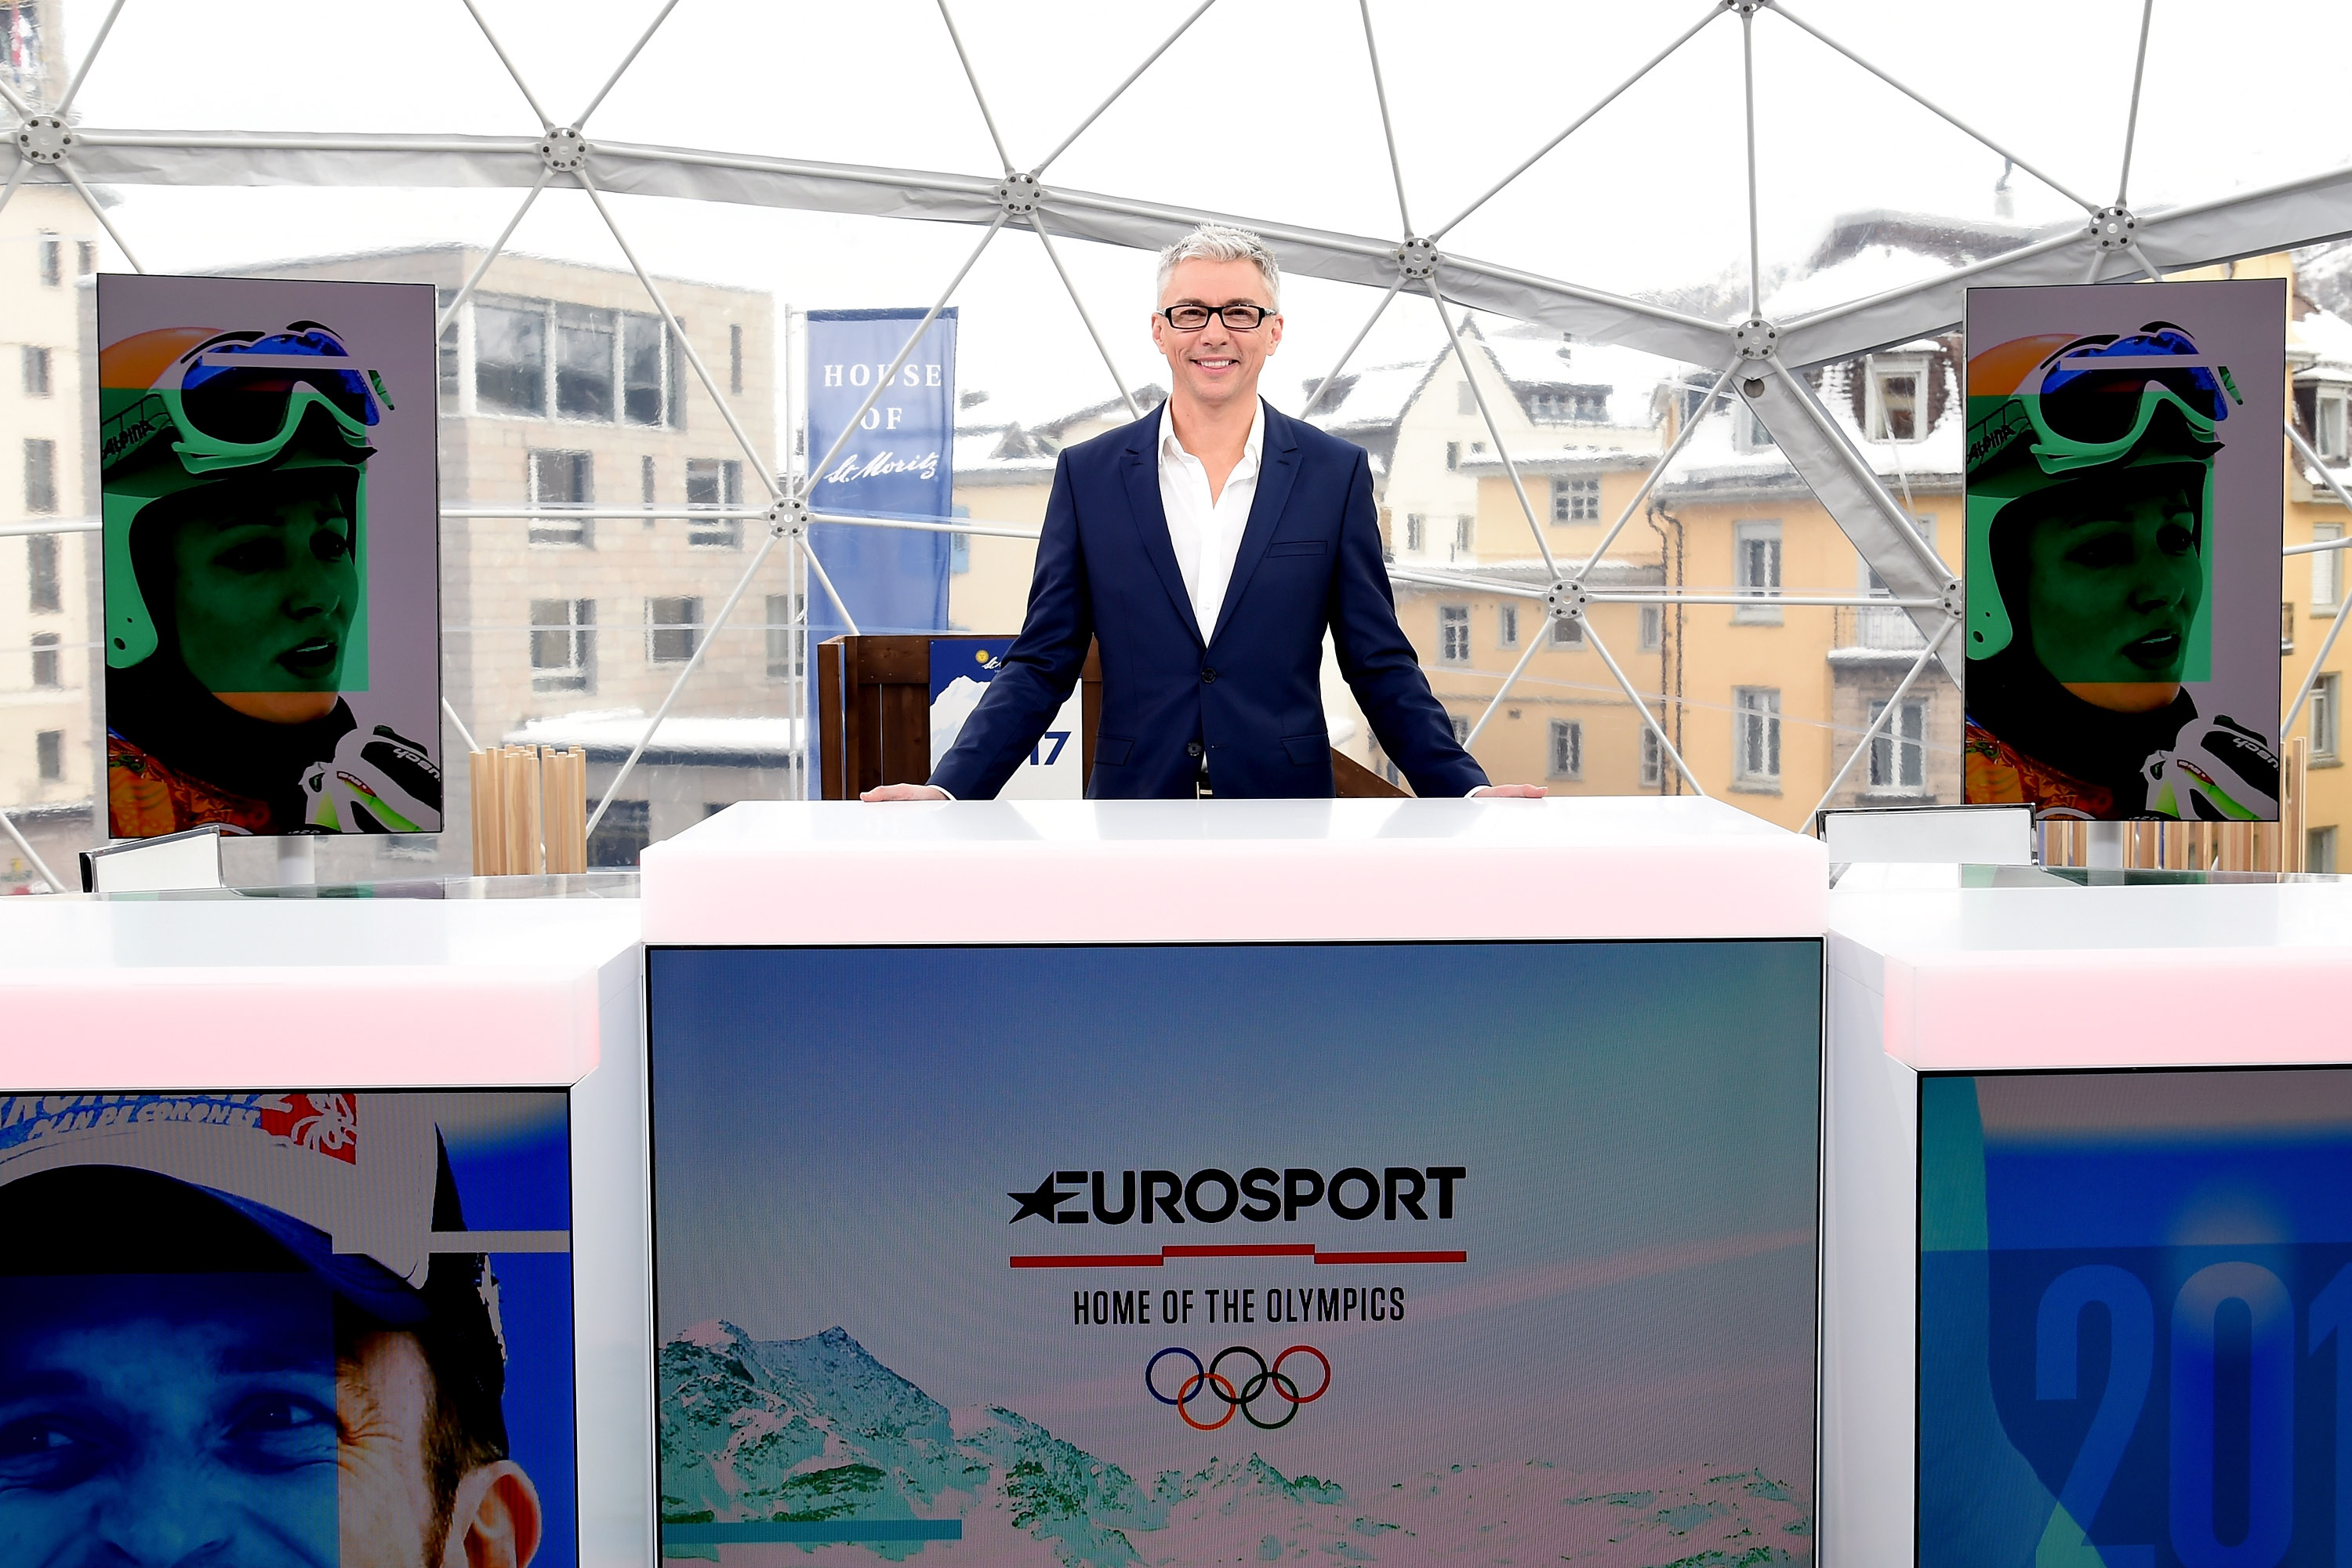 eurosport cycling commentators giro 2019